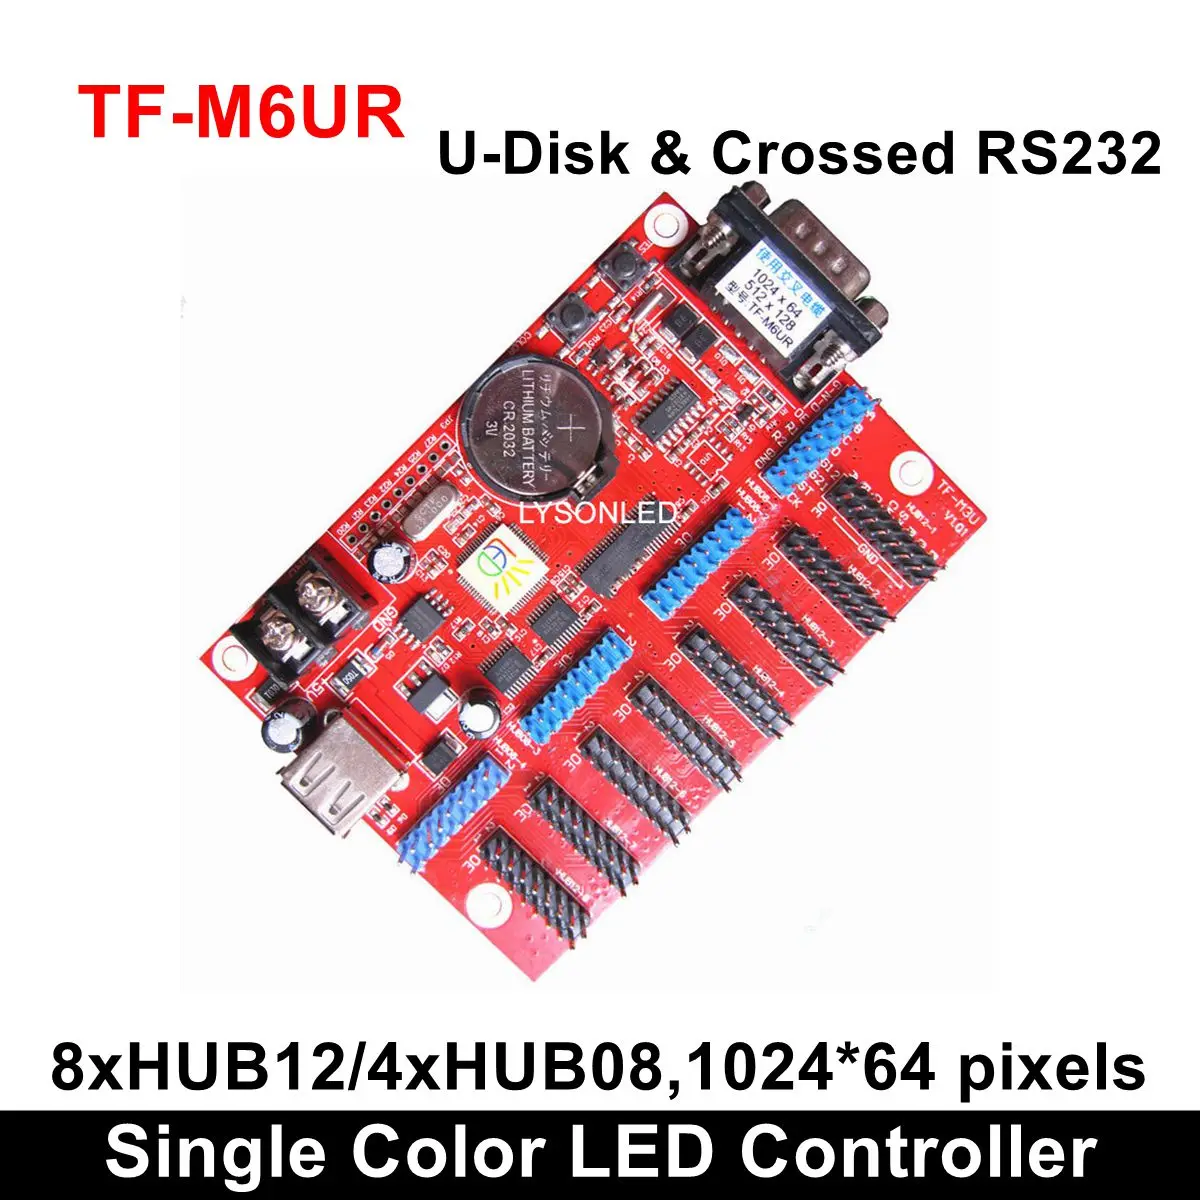 TF-MU TF-C6UR TF-M6UR большой USB драйвер Порты и разъёмы один Цвет светодиодный карты Управление P4.75/P7.62/P10 монохромный/двойной модуль светодиодной матрицы